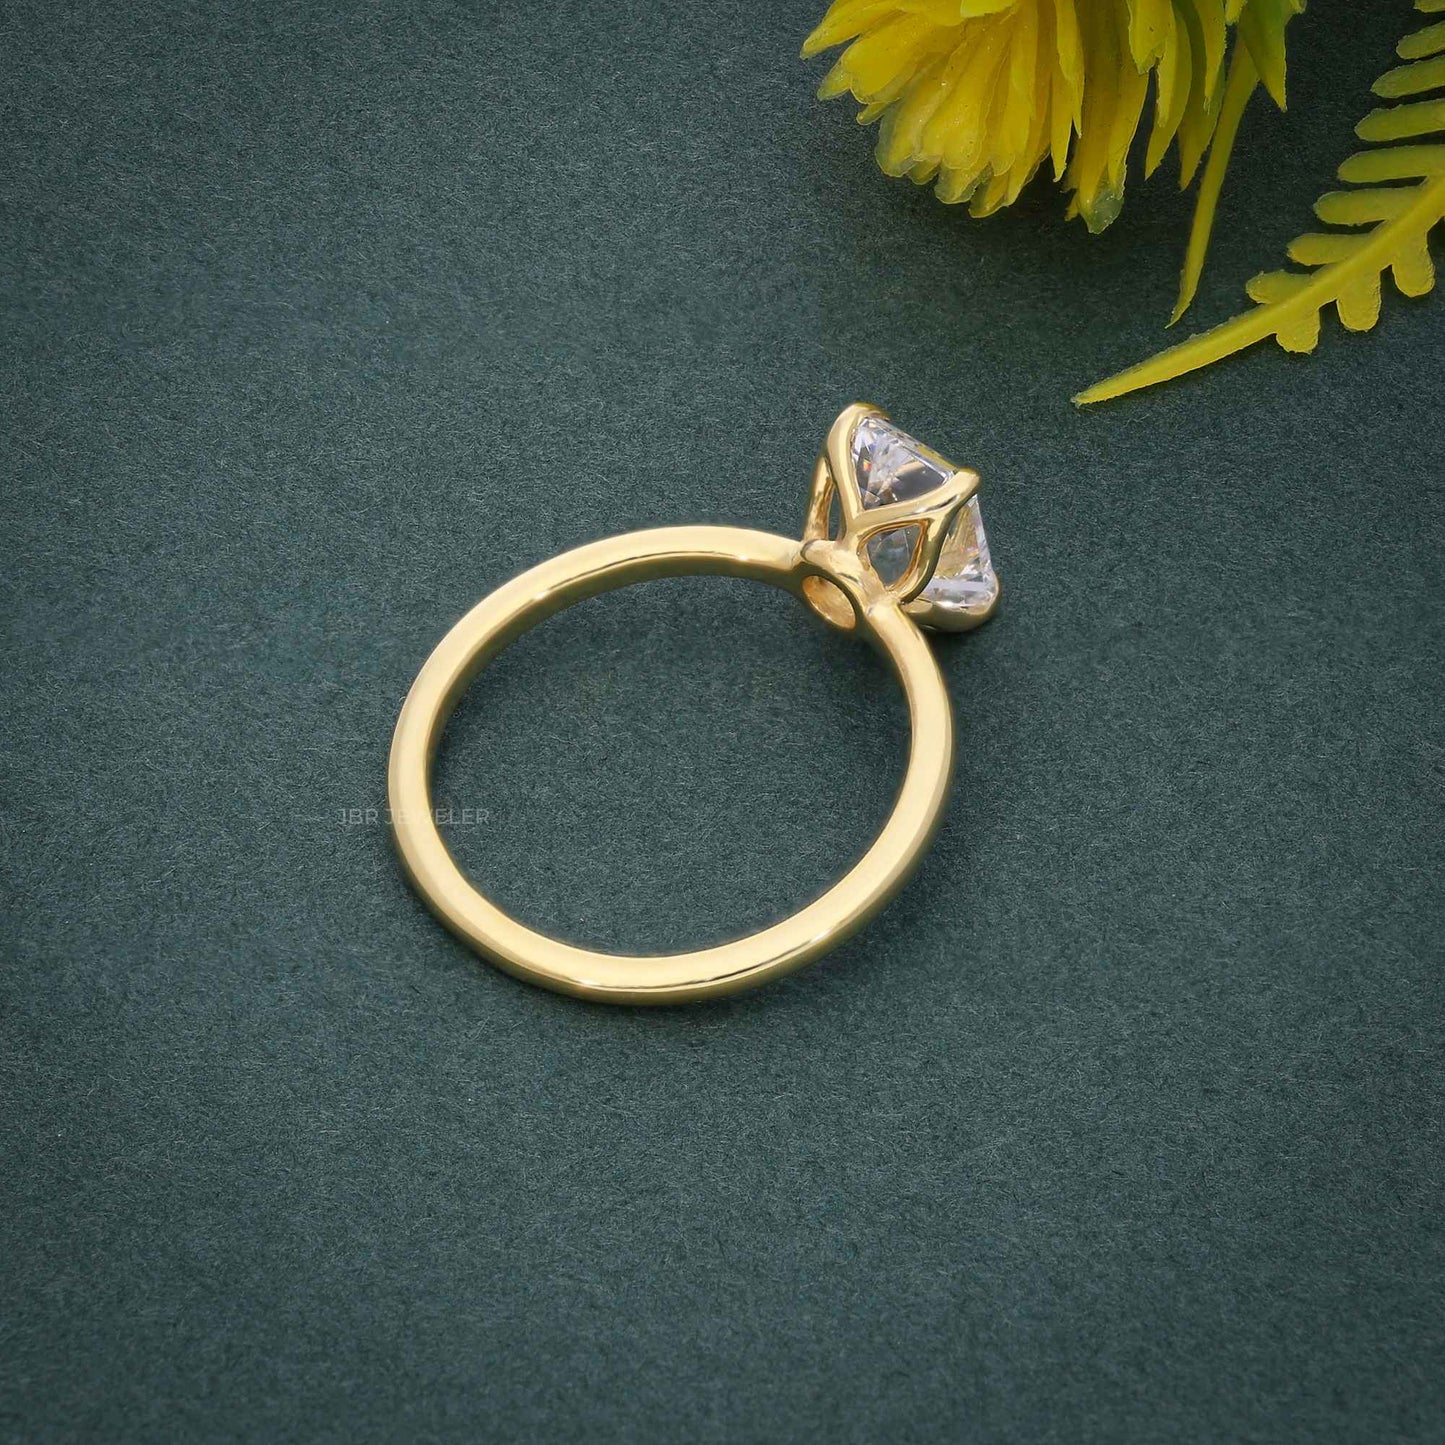 Petal Emarald Moissanite Diamond Engagement Ring